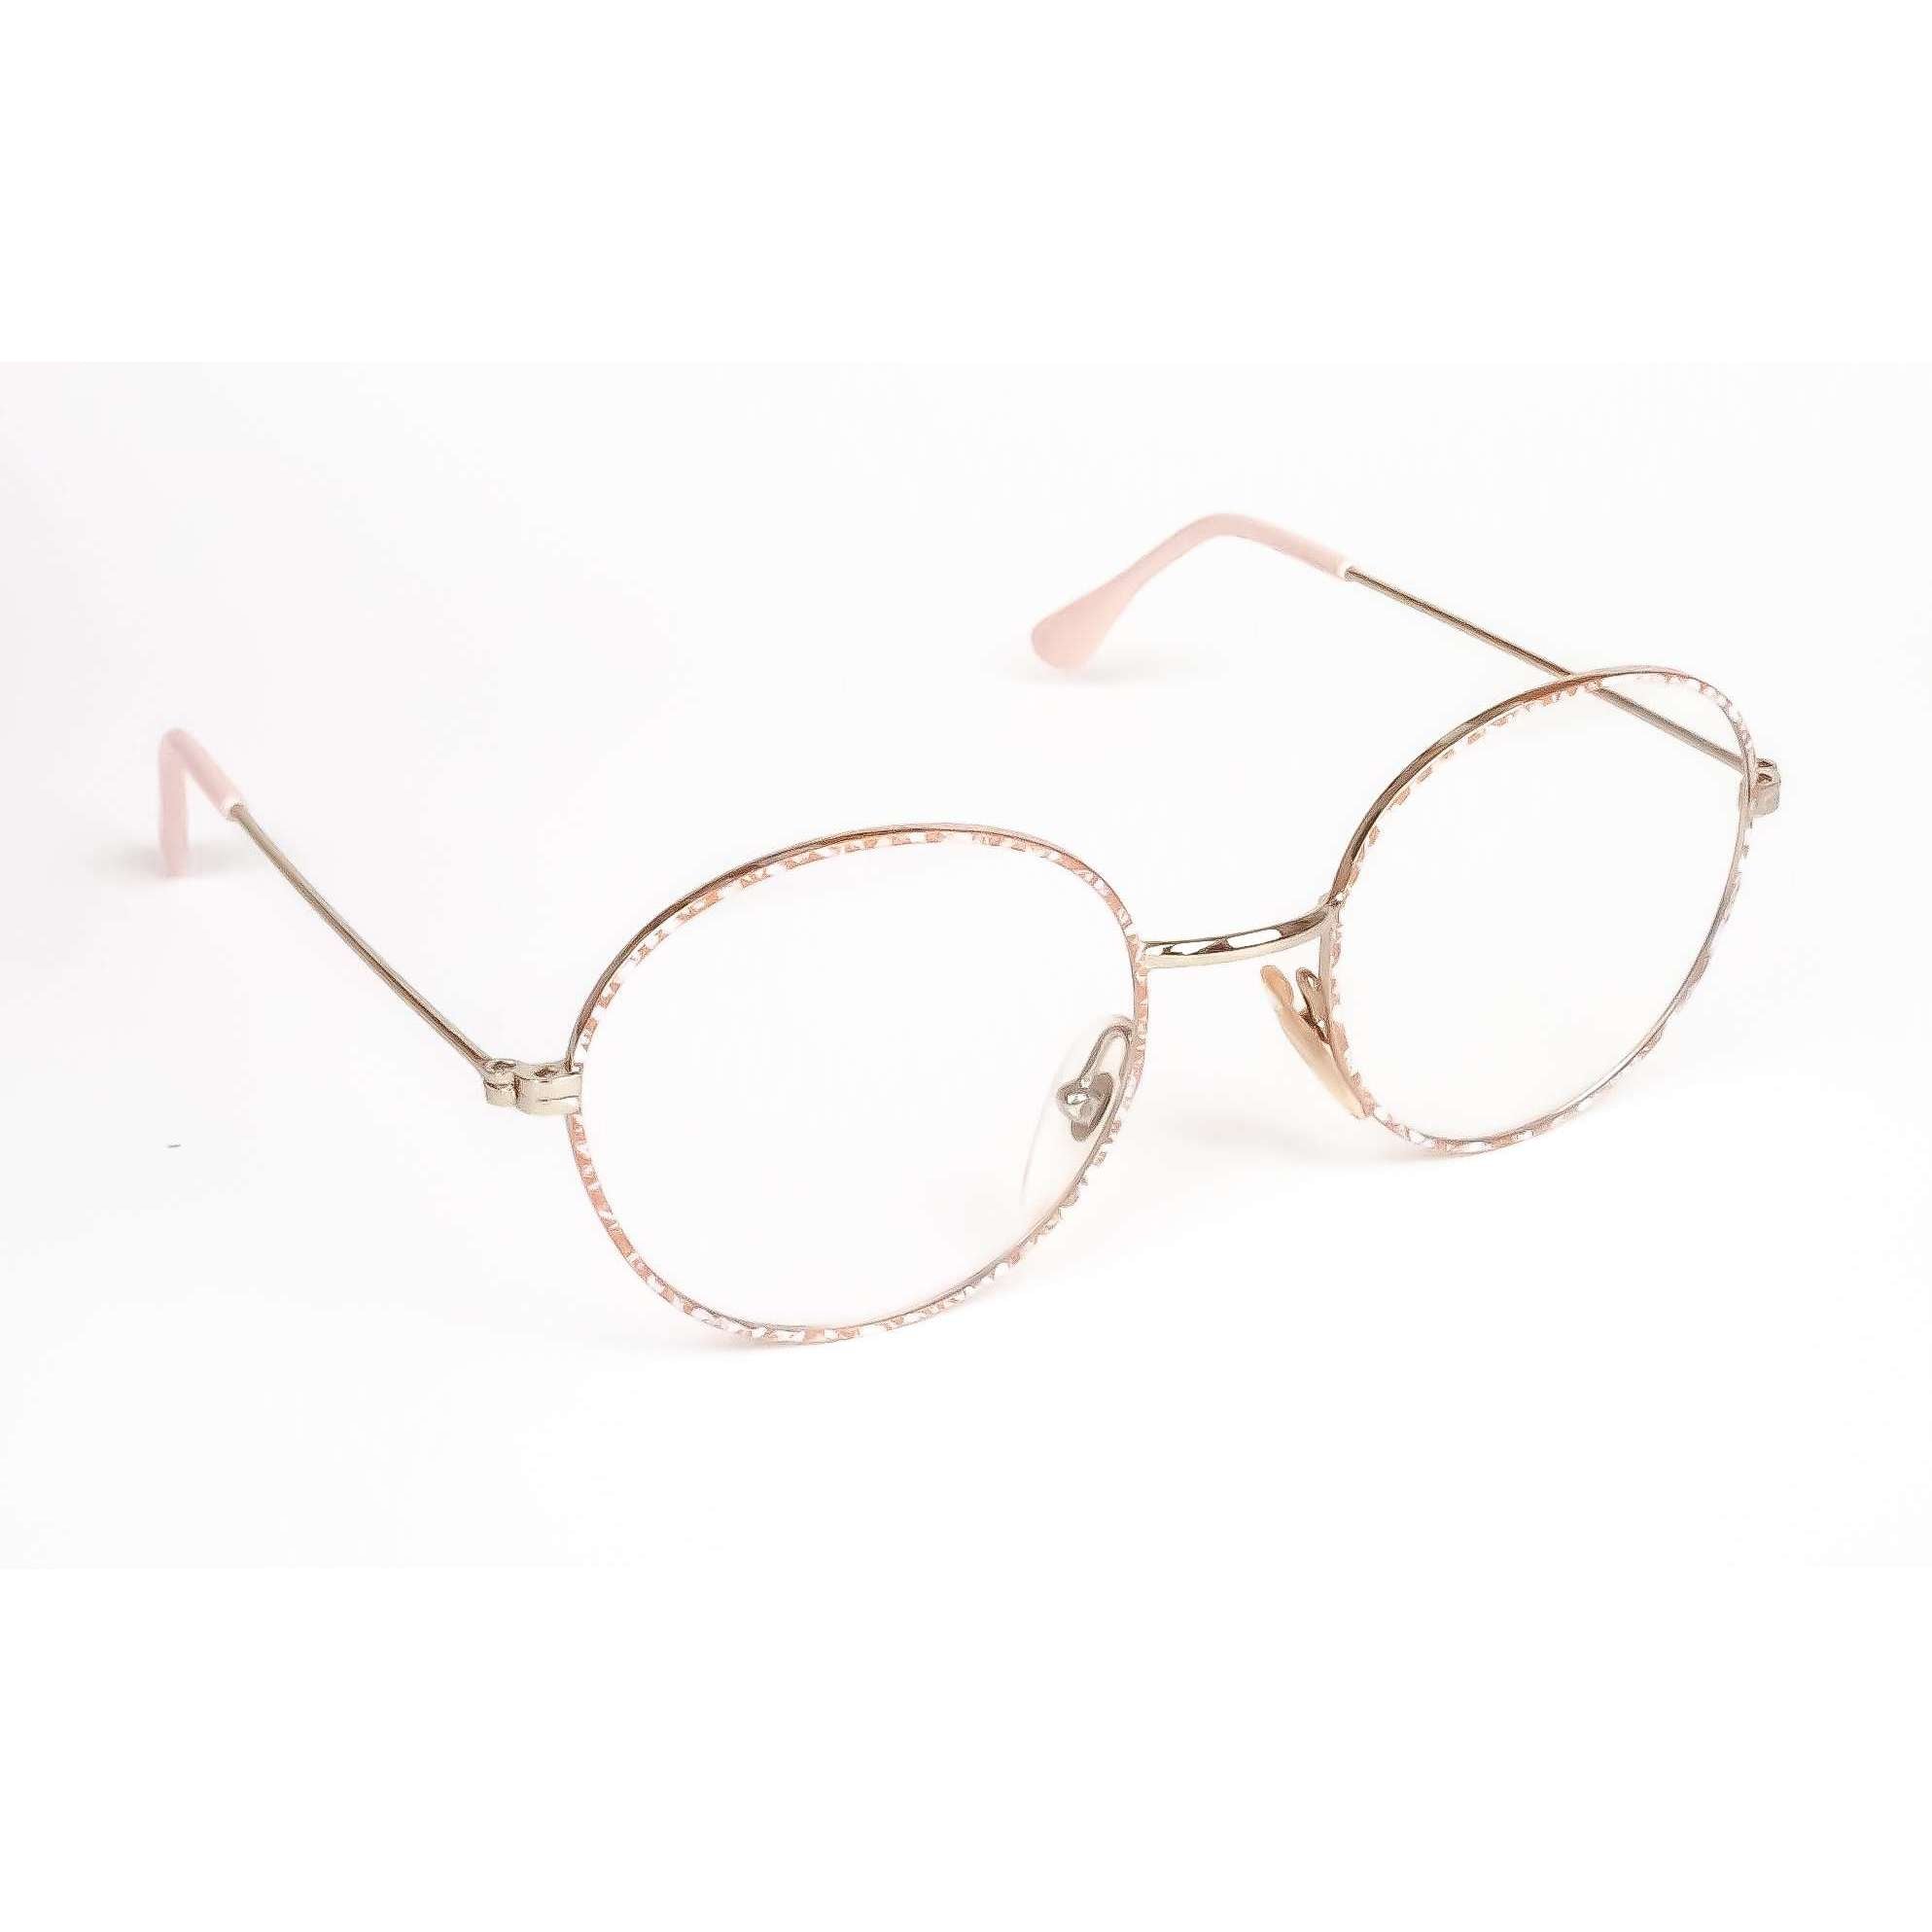 Regency Model 222 PinkRound Glasses